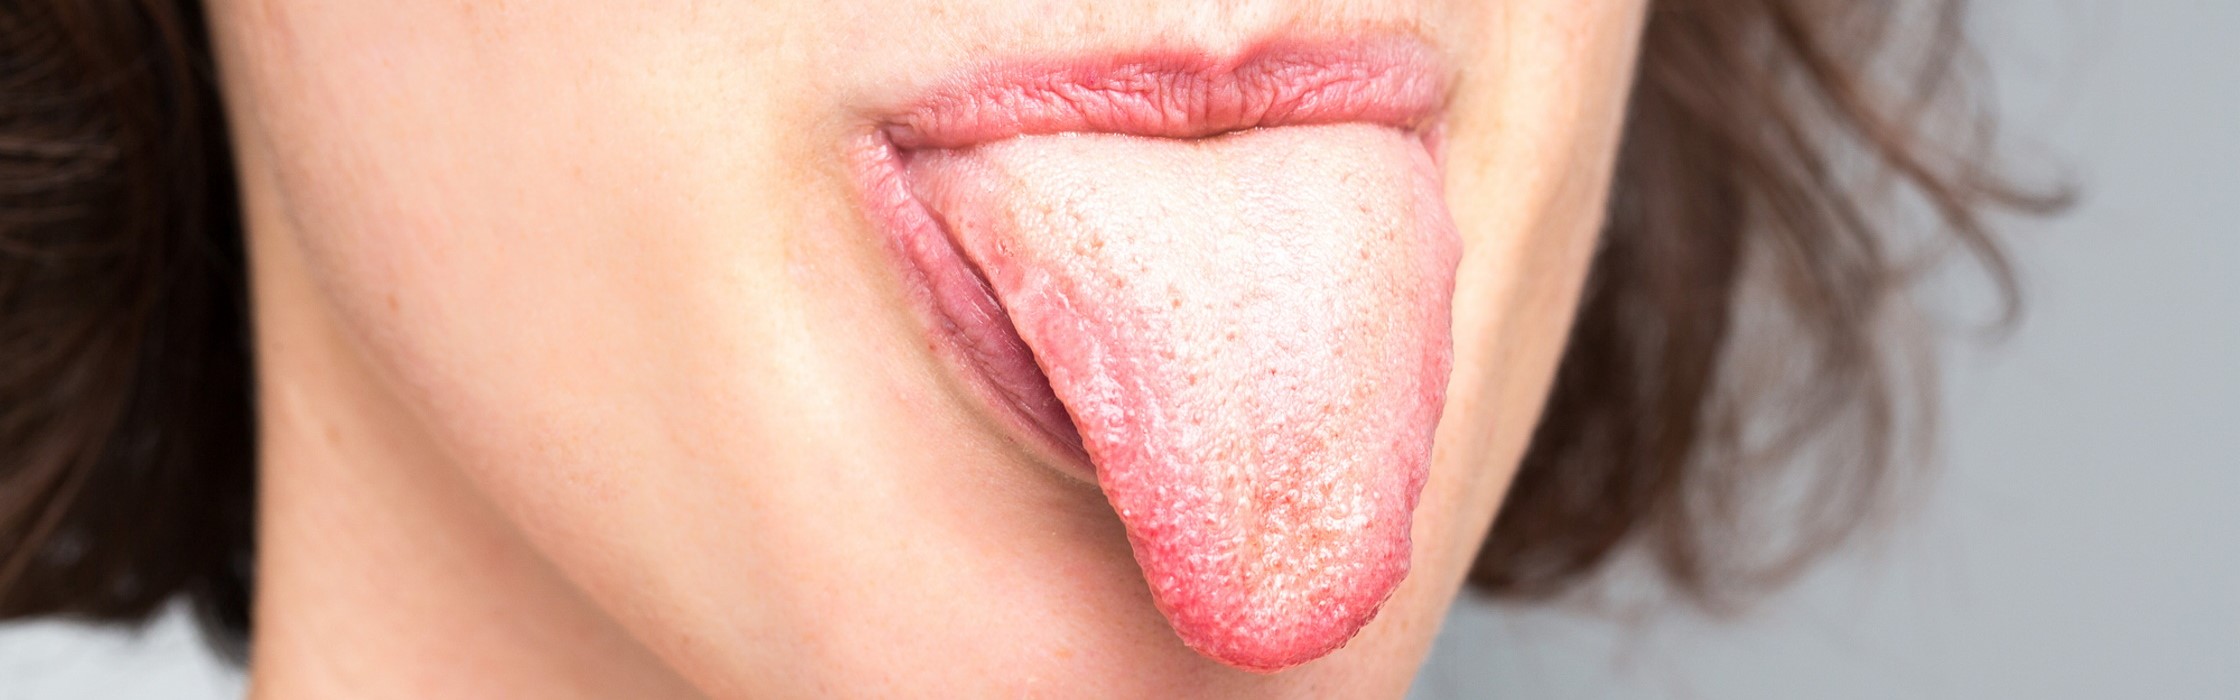 Zungenbelag: Ist eine belegte Zunge schädlich?